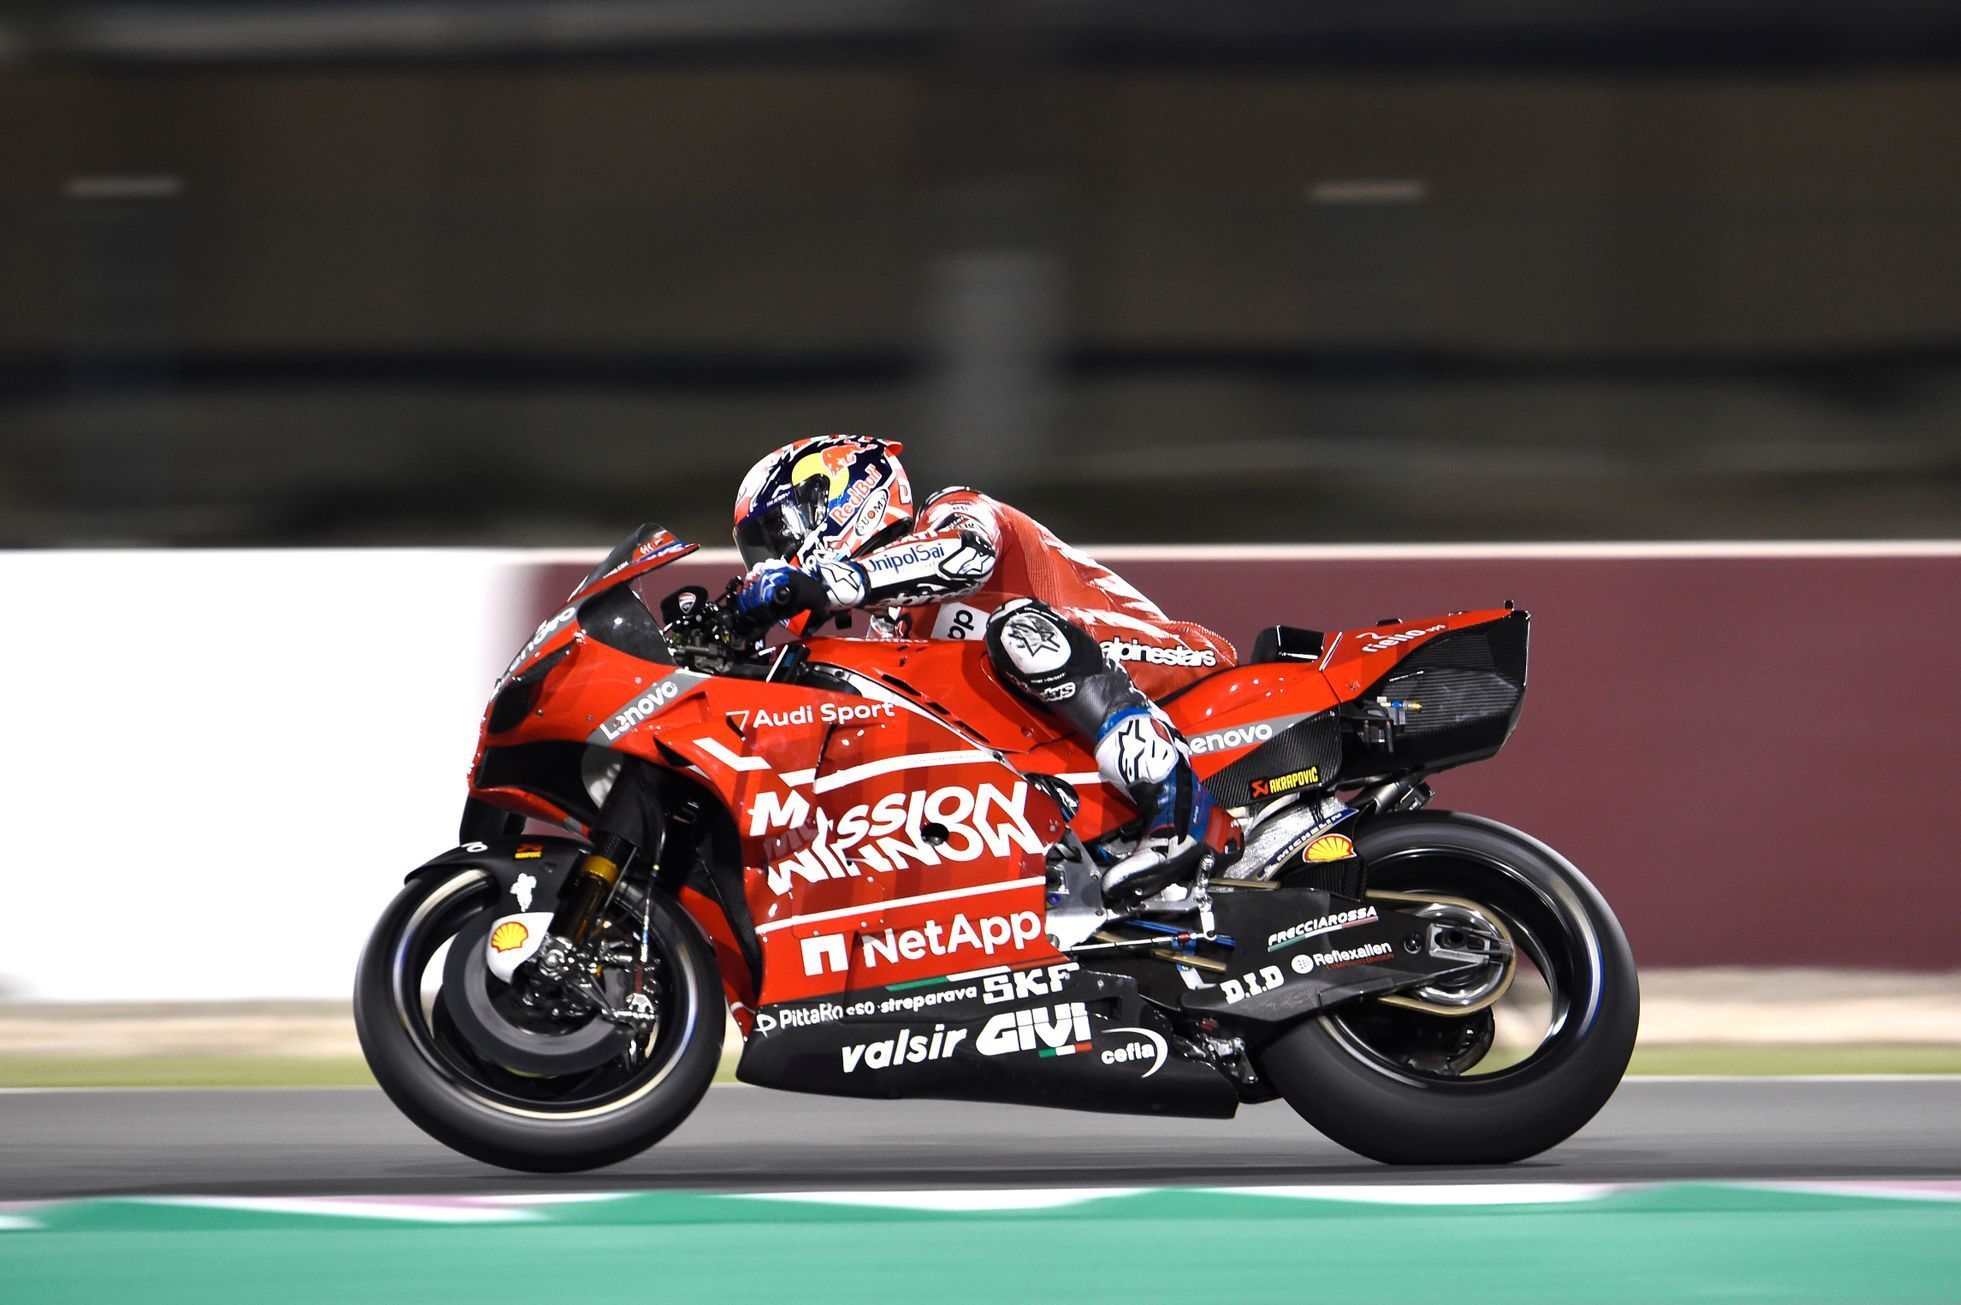 MotoGP 2019: Andrea Dovizioso, Ducati